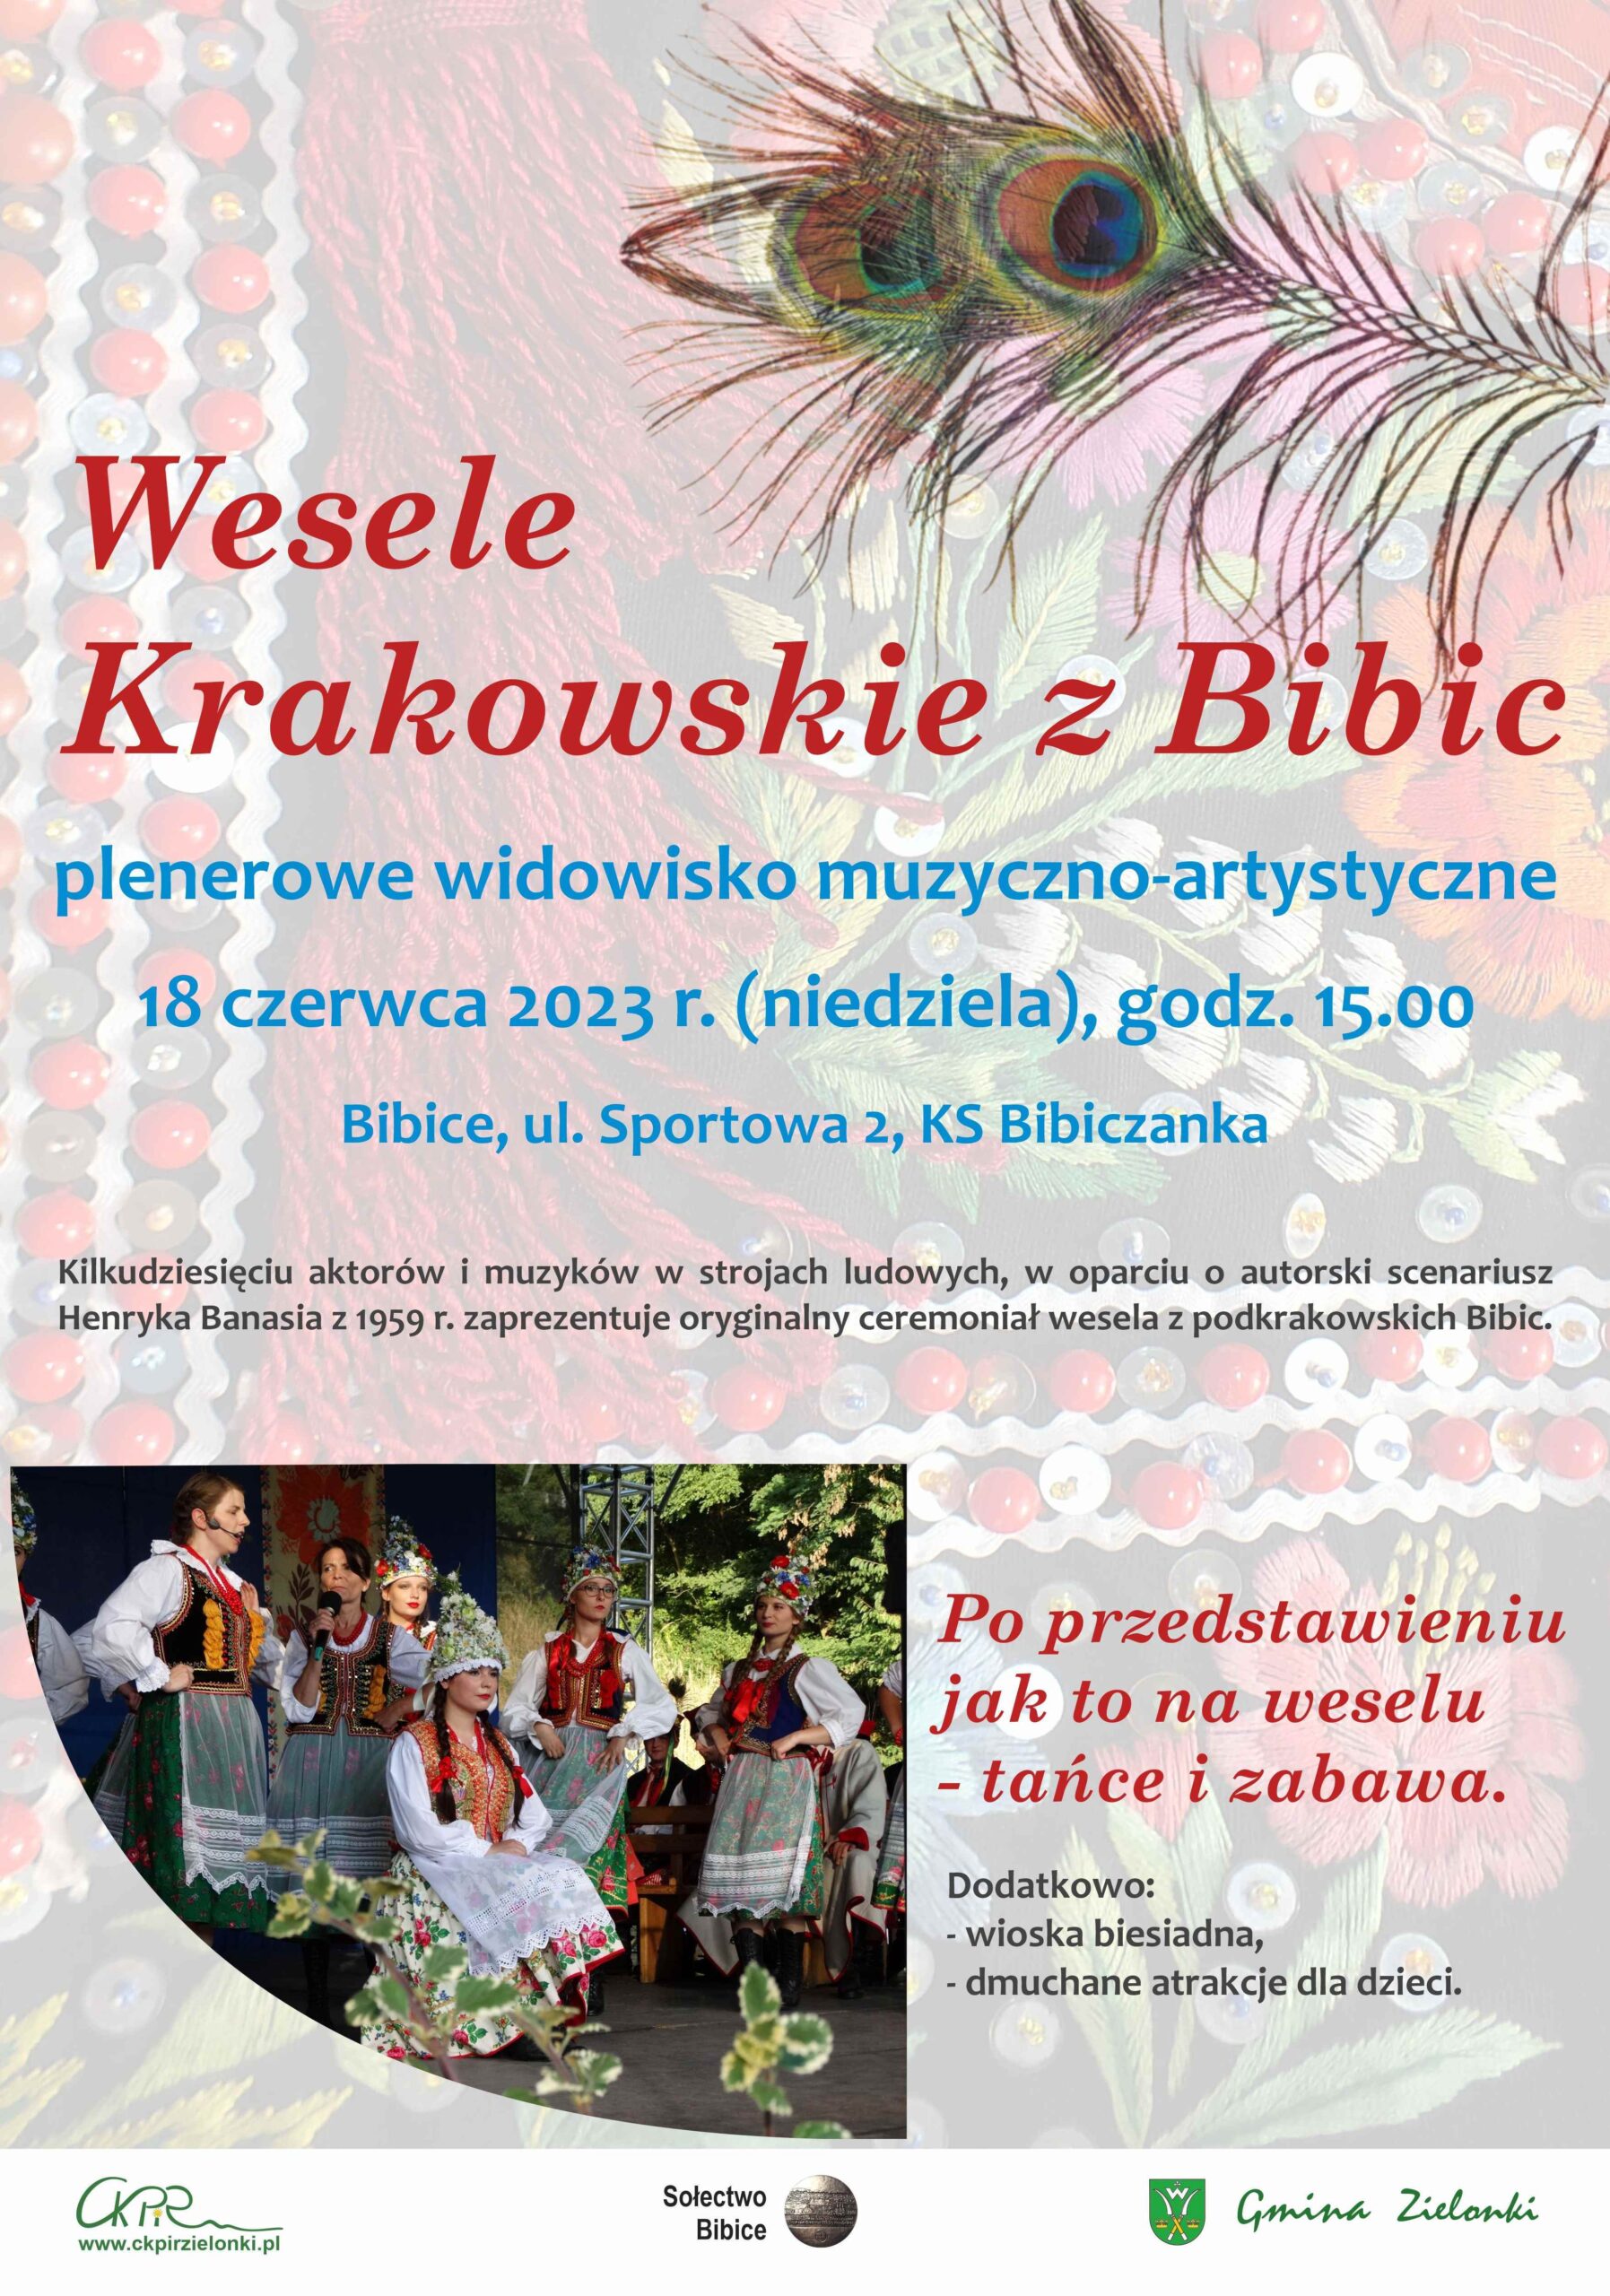 plakat informacyjny na temat Wesela krakowskiego z Bibic - zaproszenie na wydażenie